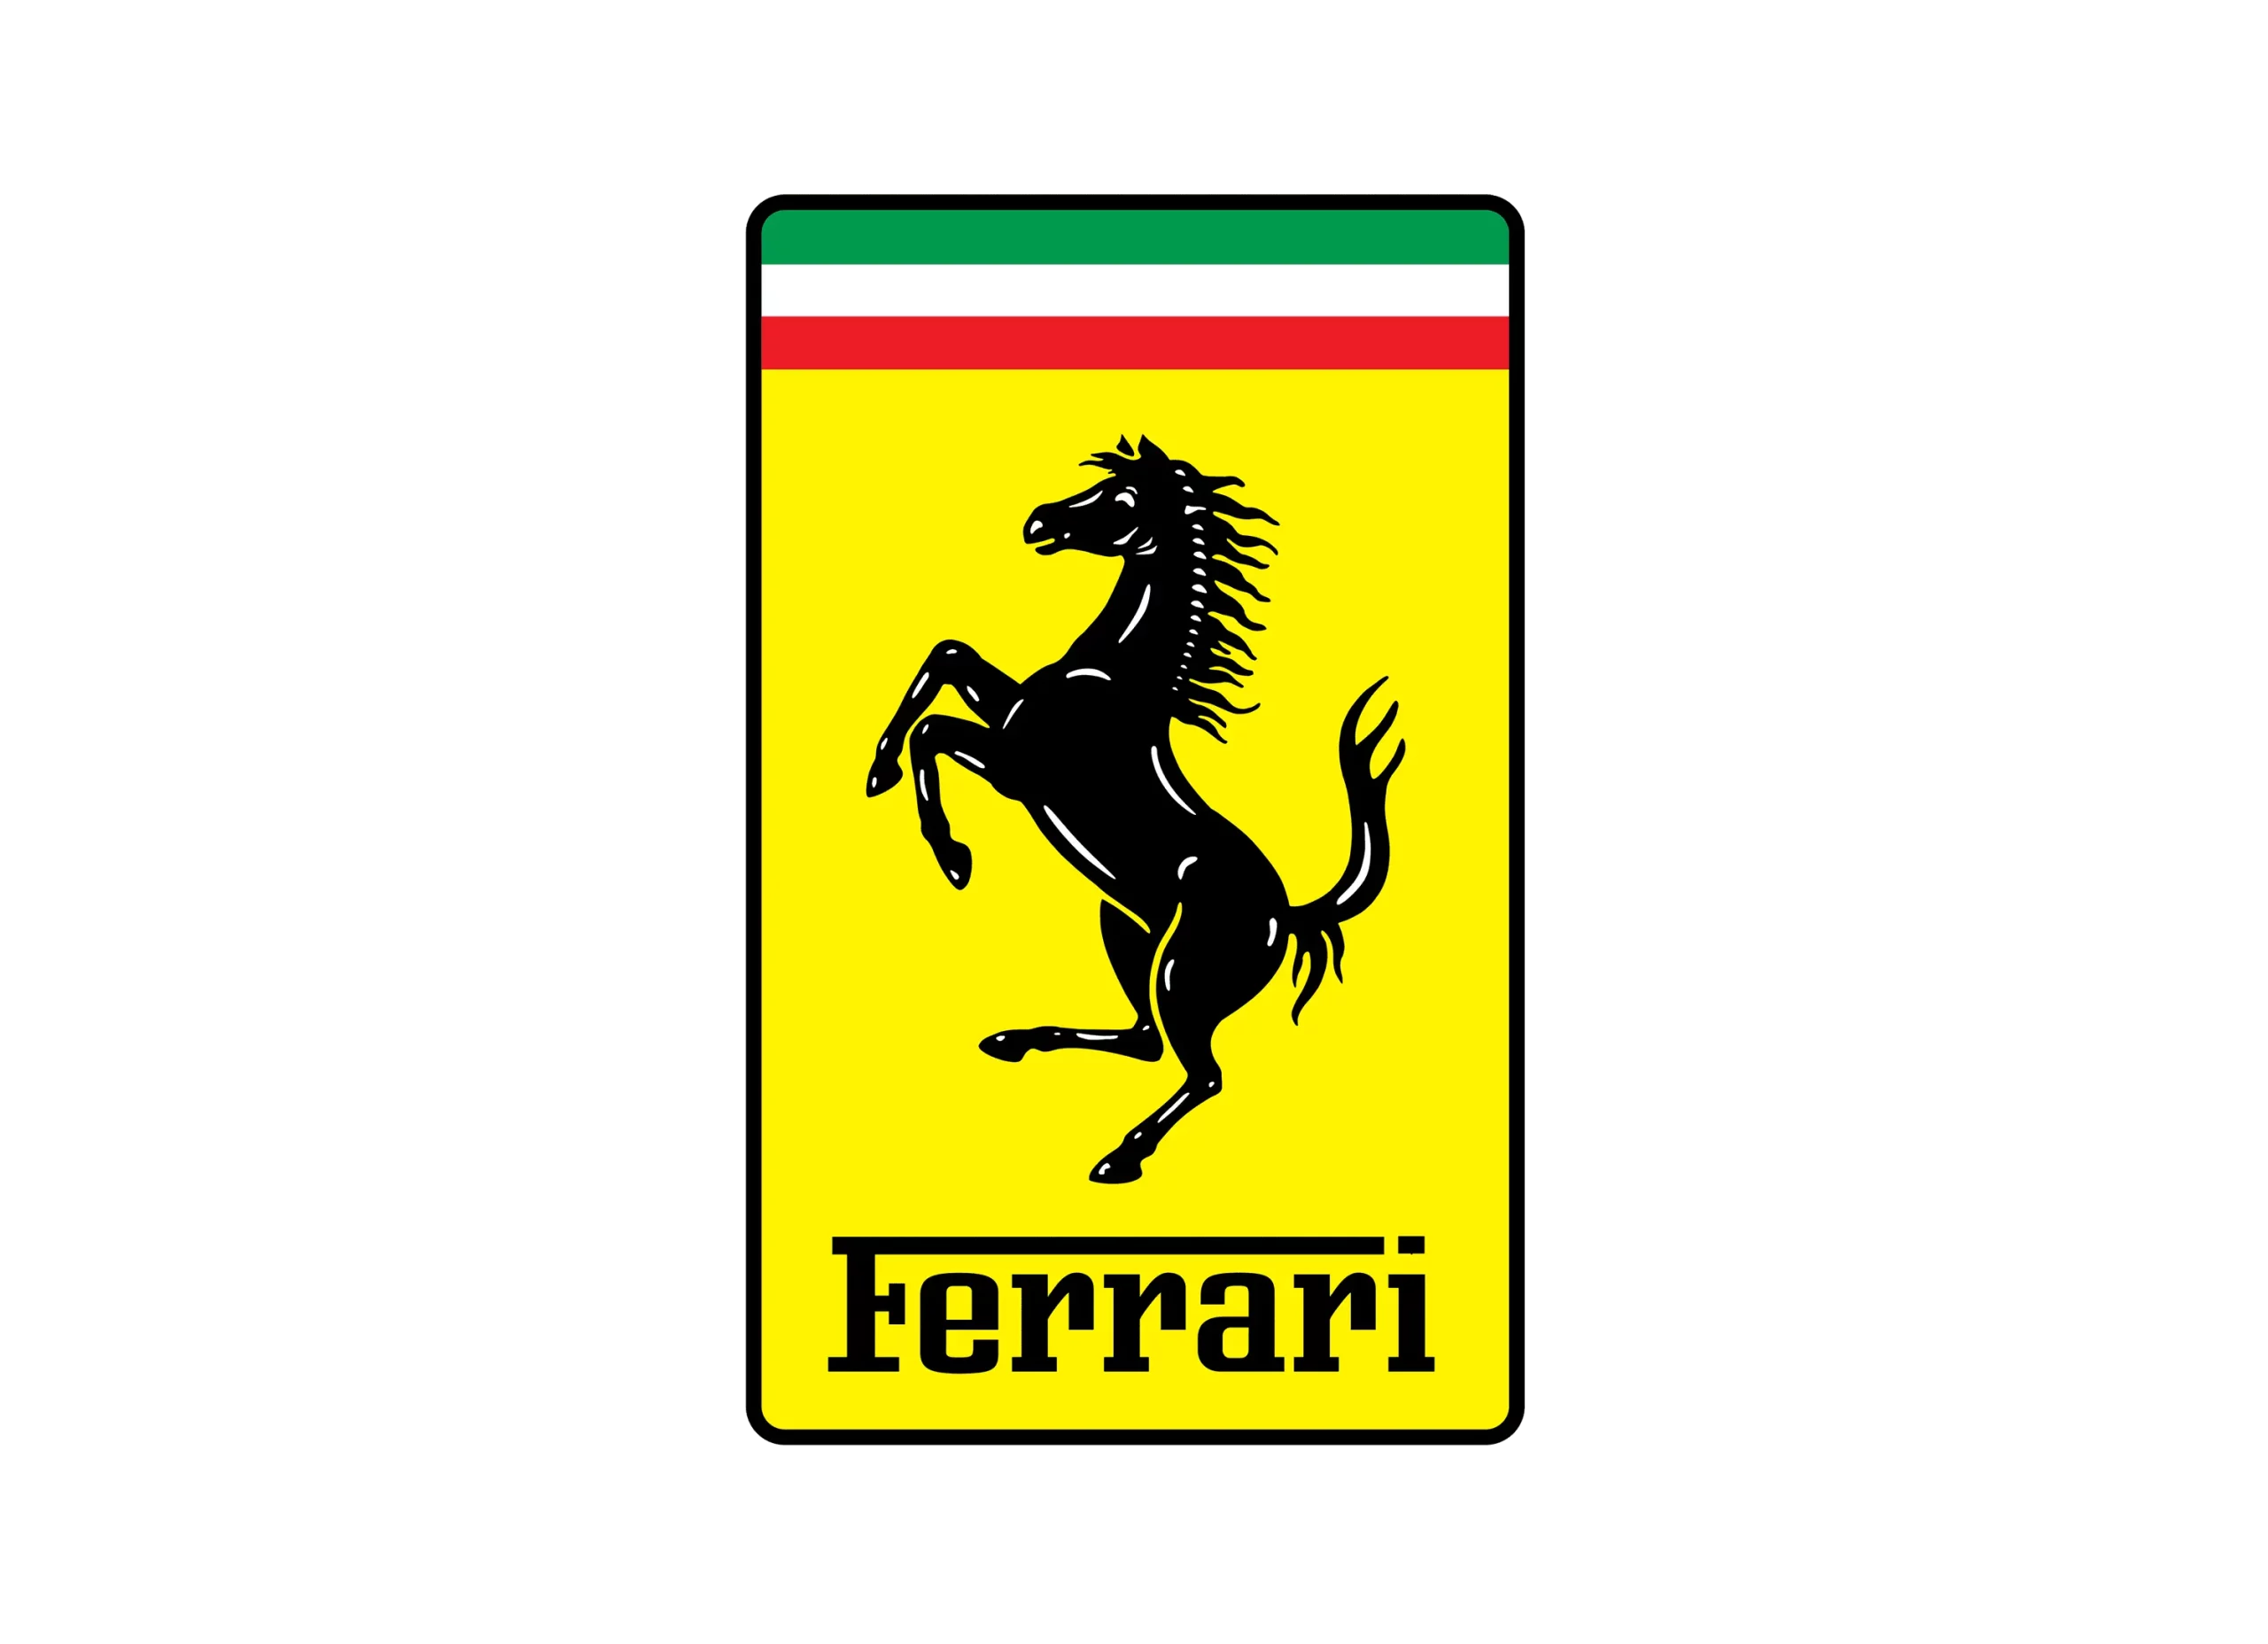 Ferrari logo 2002-present